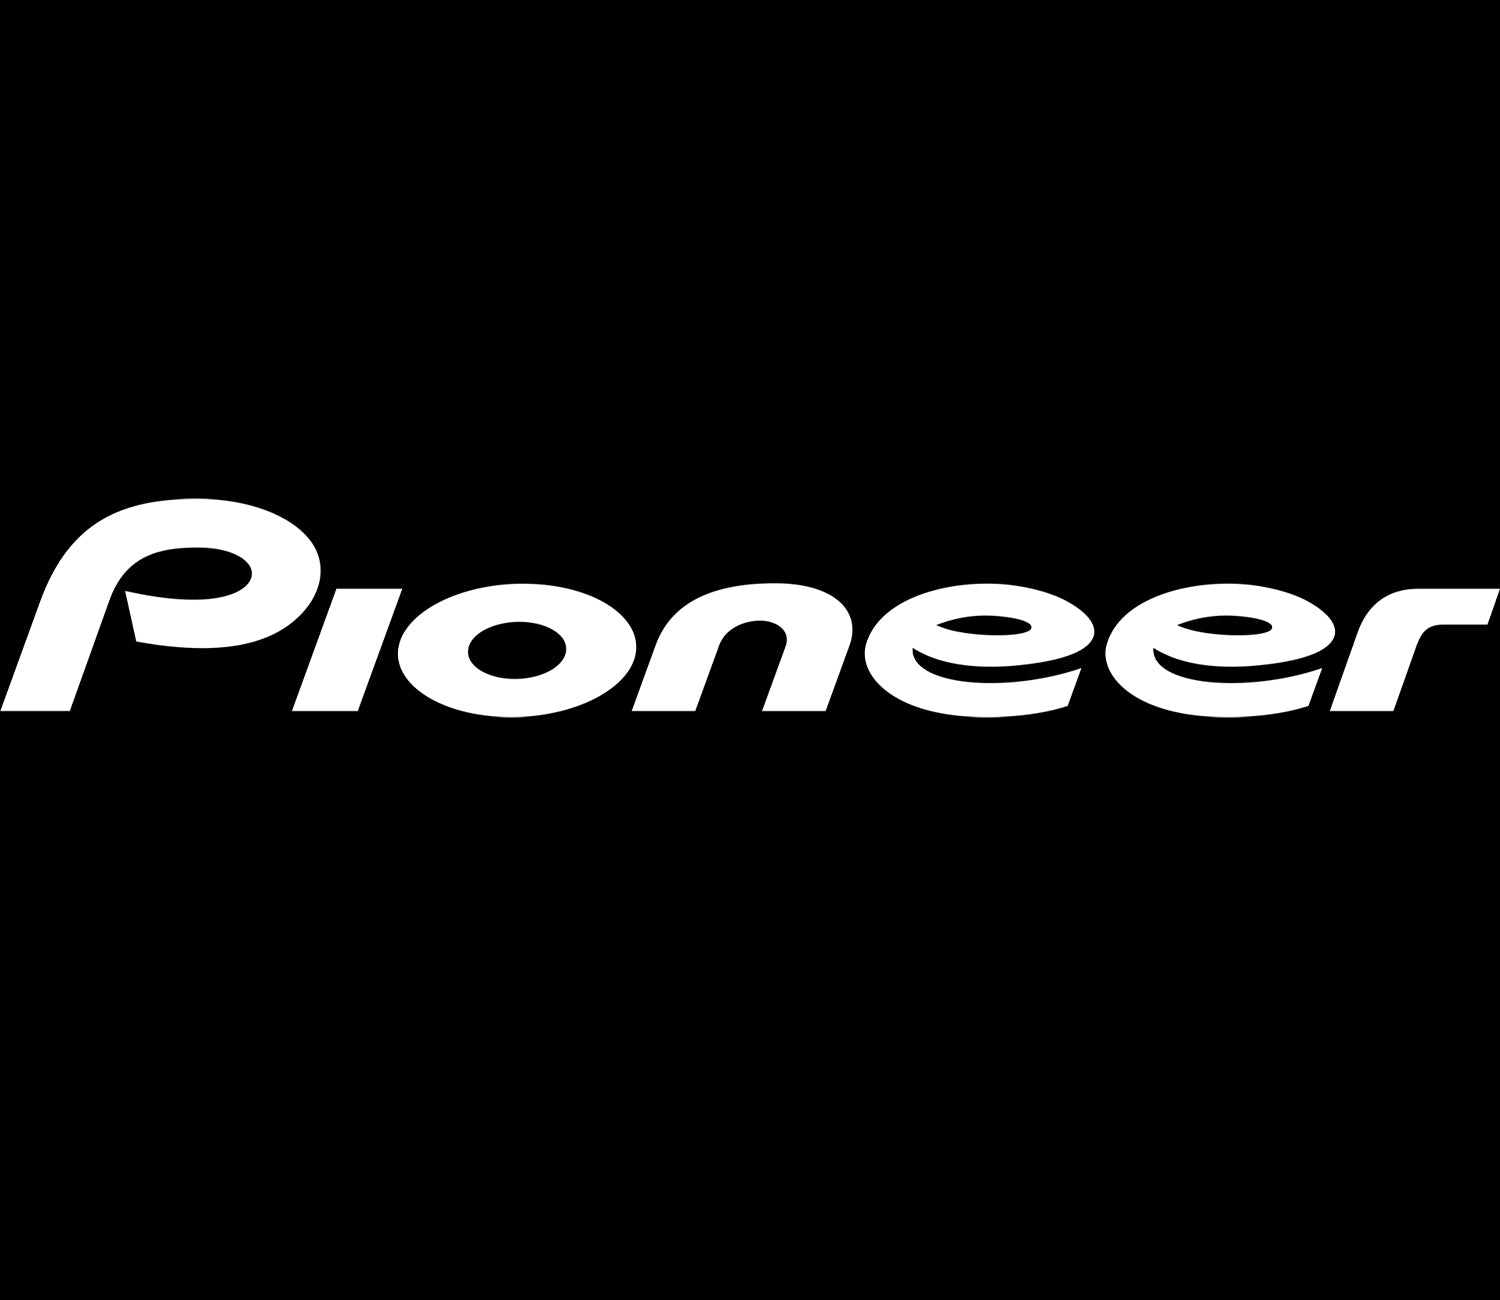 Pioneer Sticker 300x45 mm White PIONEER STICKER 300x45 White